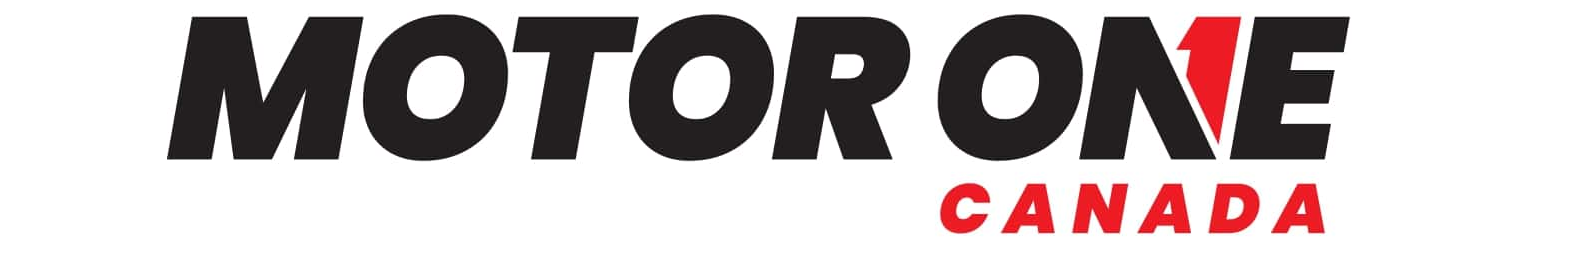 Motor One Canada logo